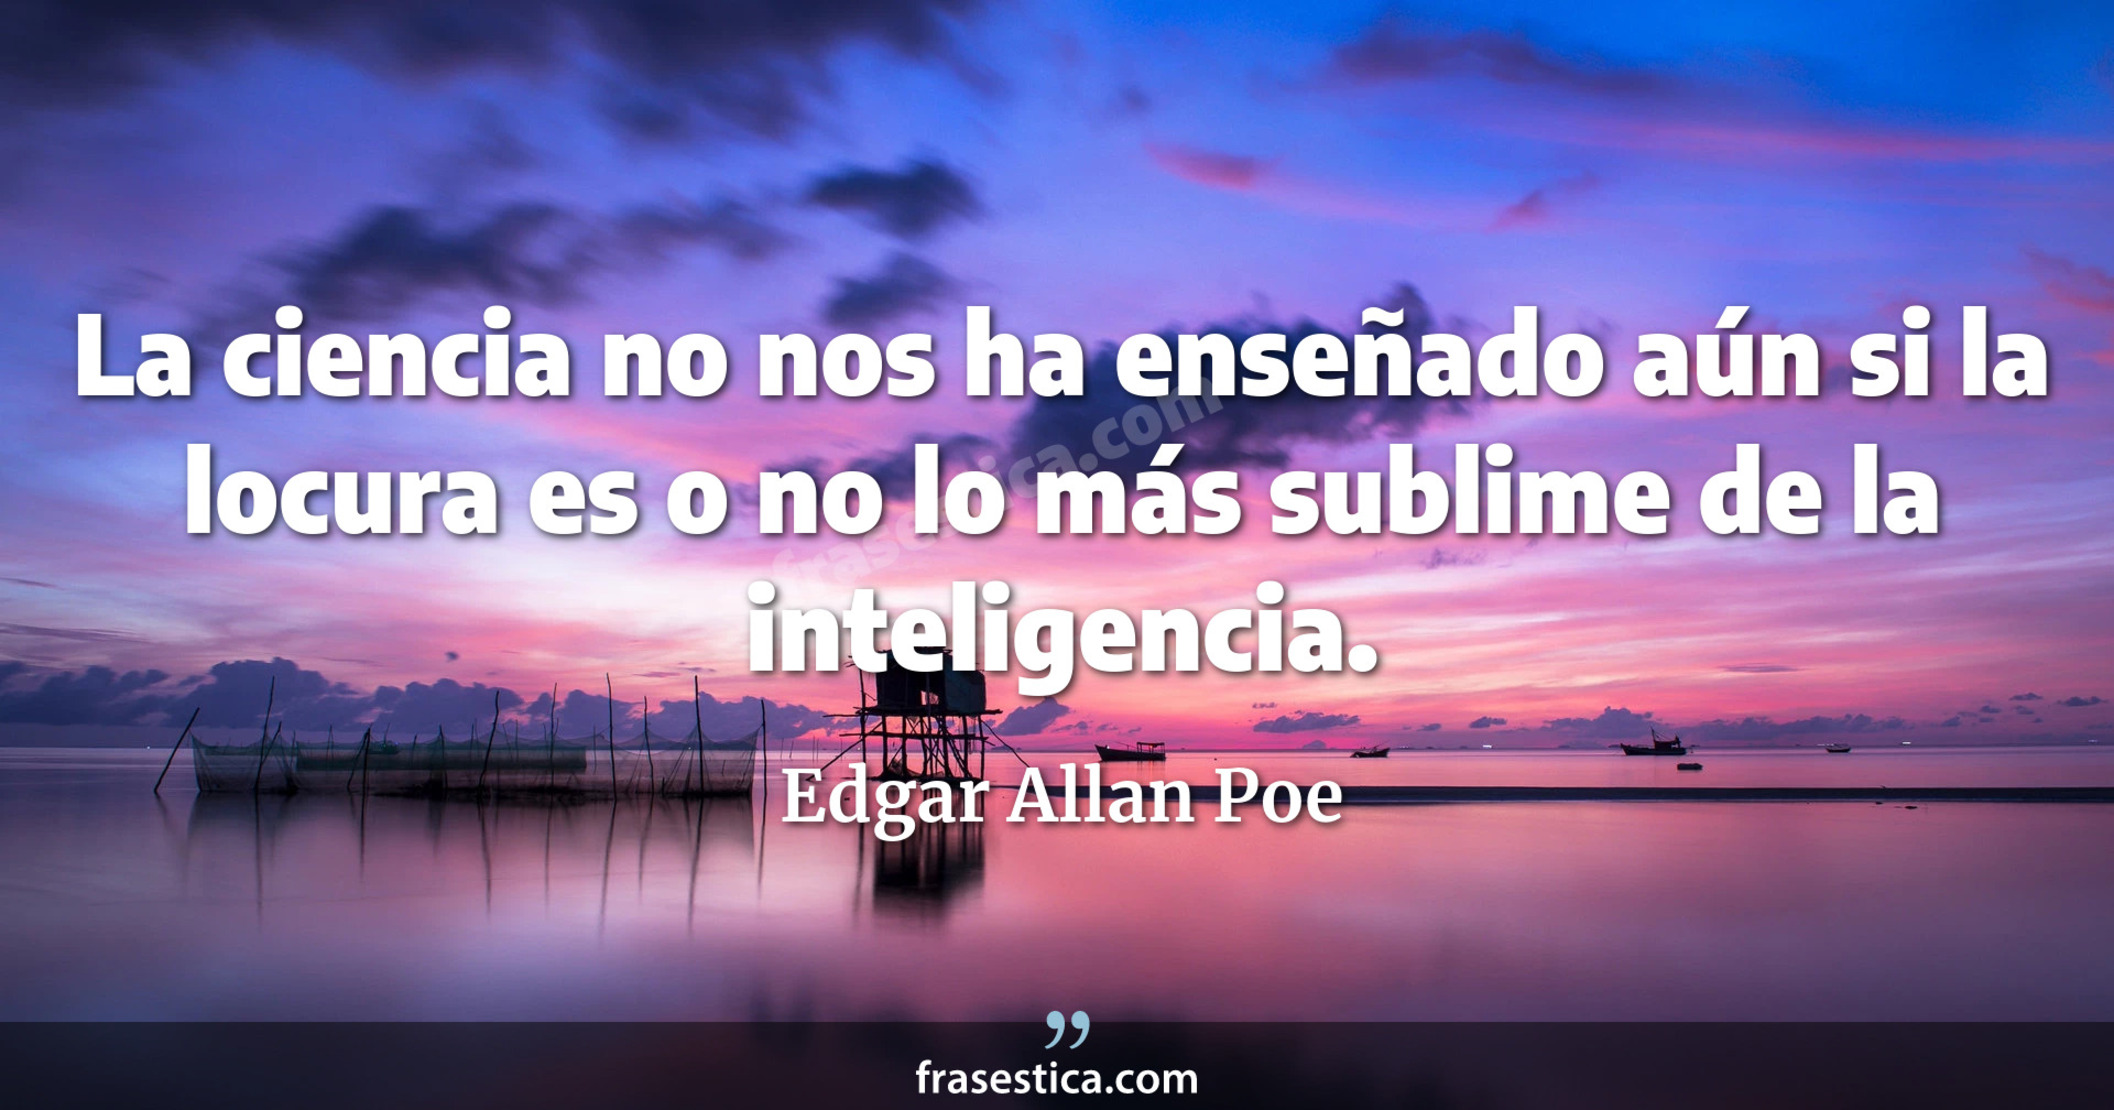 La ciencia no nos ha enseñado aún si la locura es o no lo más sublime de la inteligencia. - Edgar Allan Poe